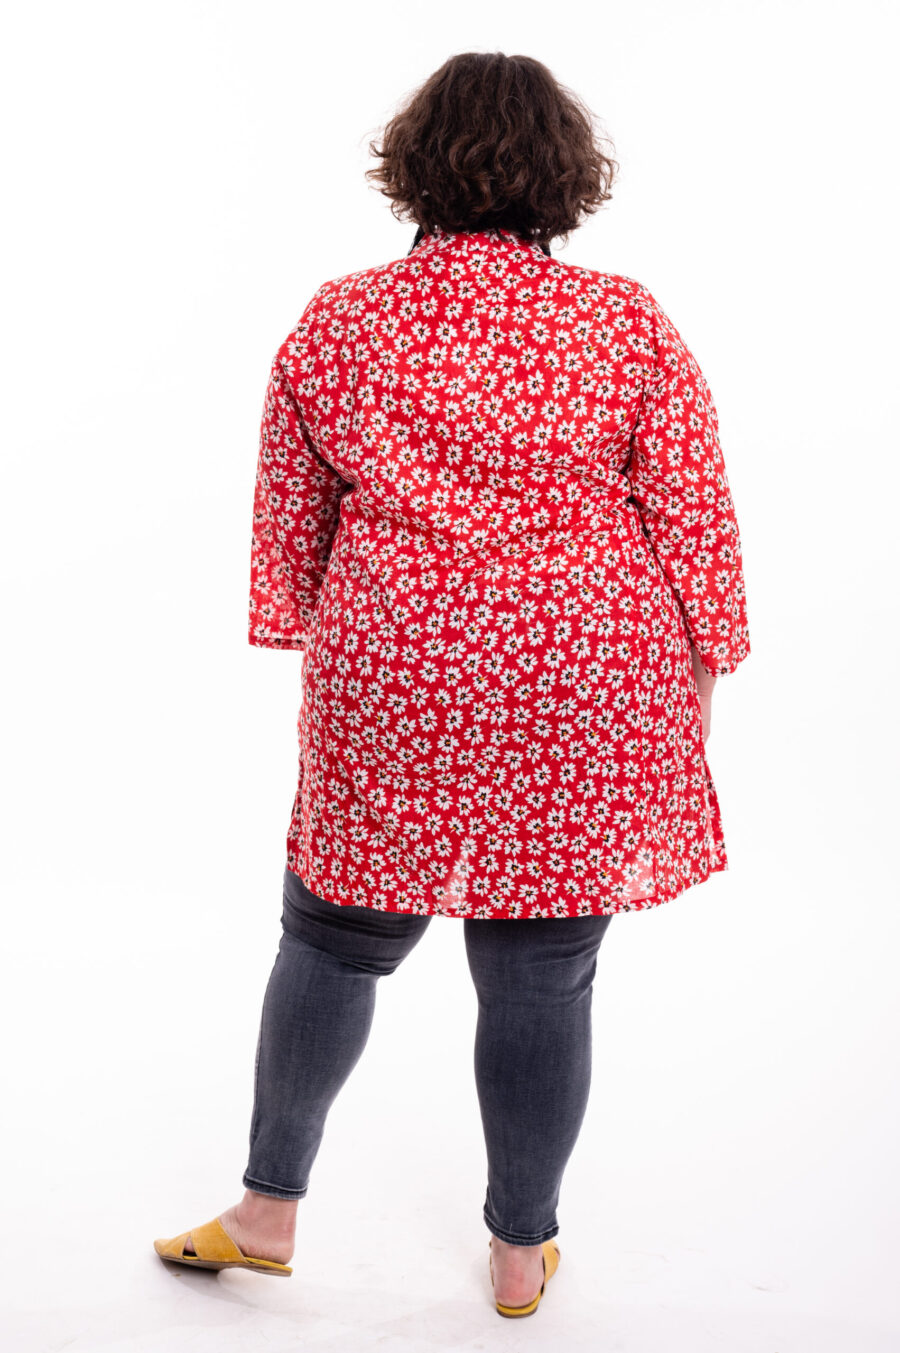 טוניקה ג'וי לנשים | טוניקה בעיצוב ייחודי – טוניקה אדומה עם הדפס פרחוני